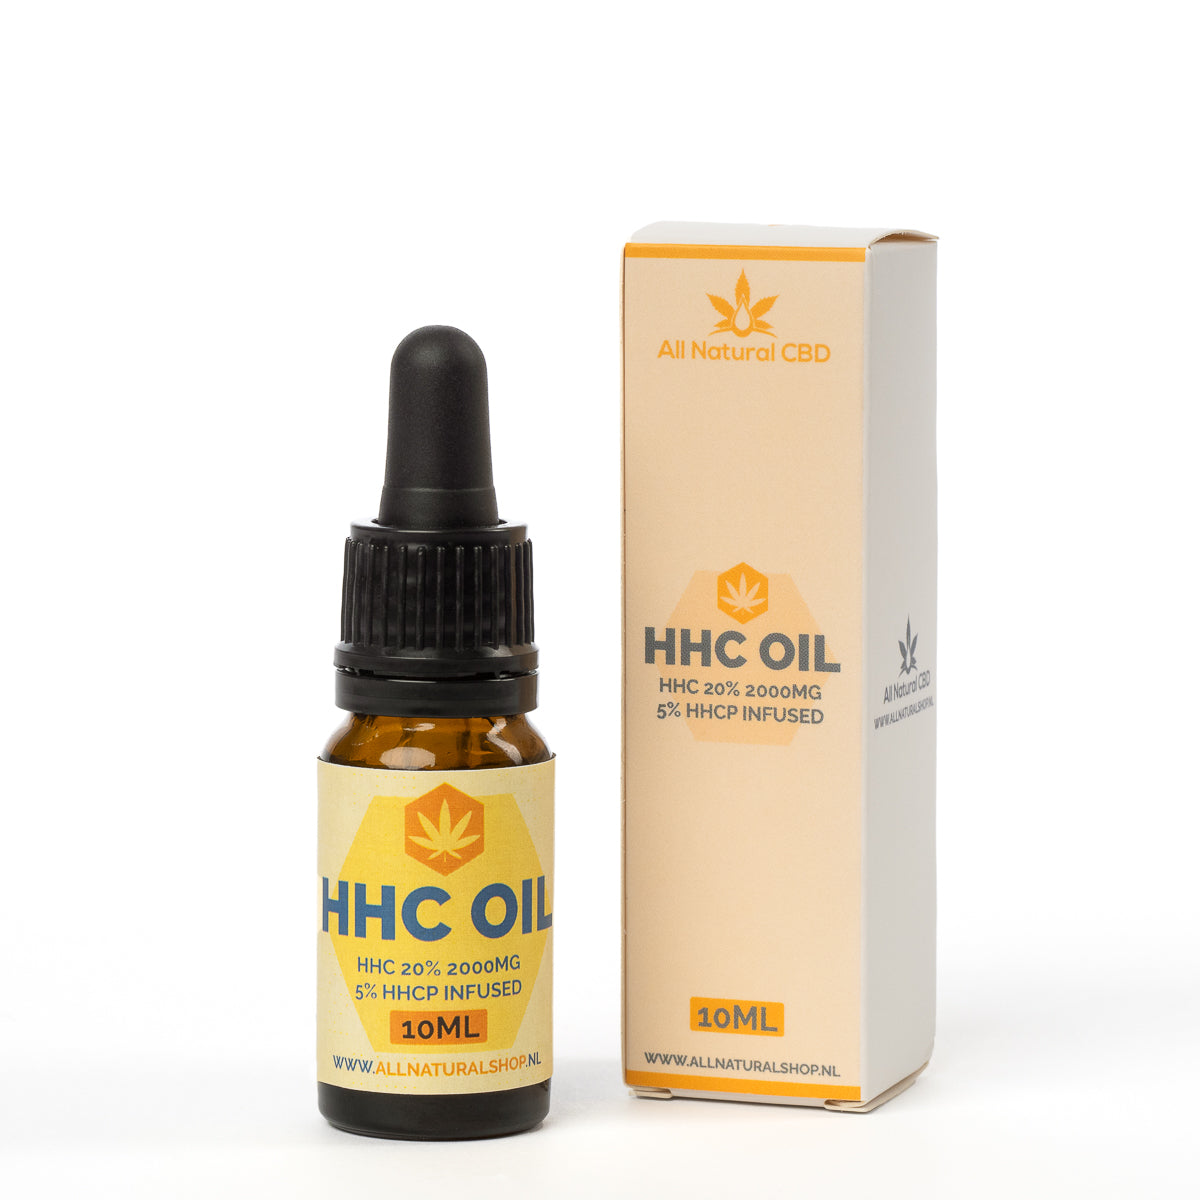 HHC + HHCP oil 20% 2000mg (10ml)